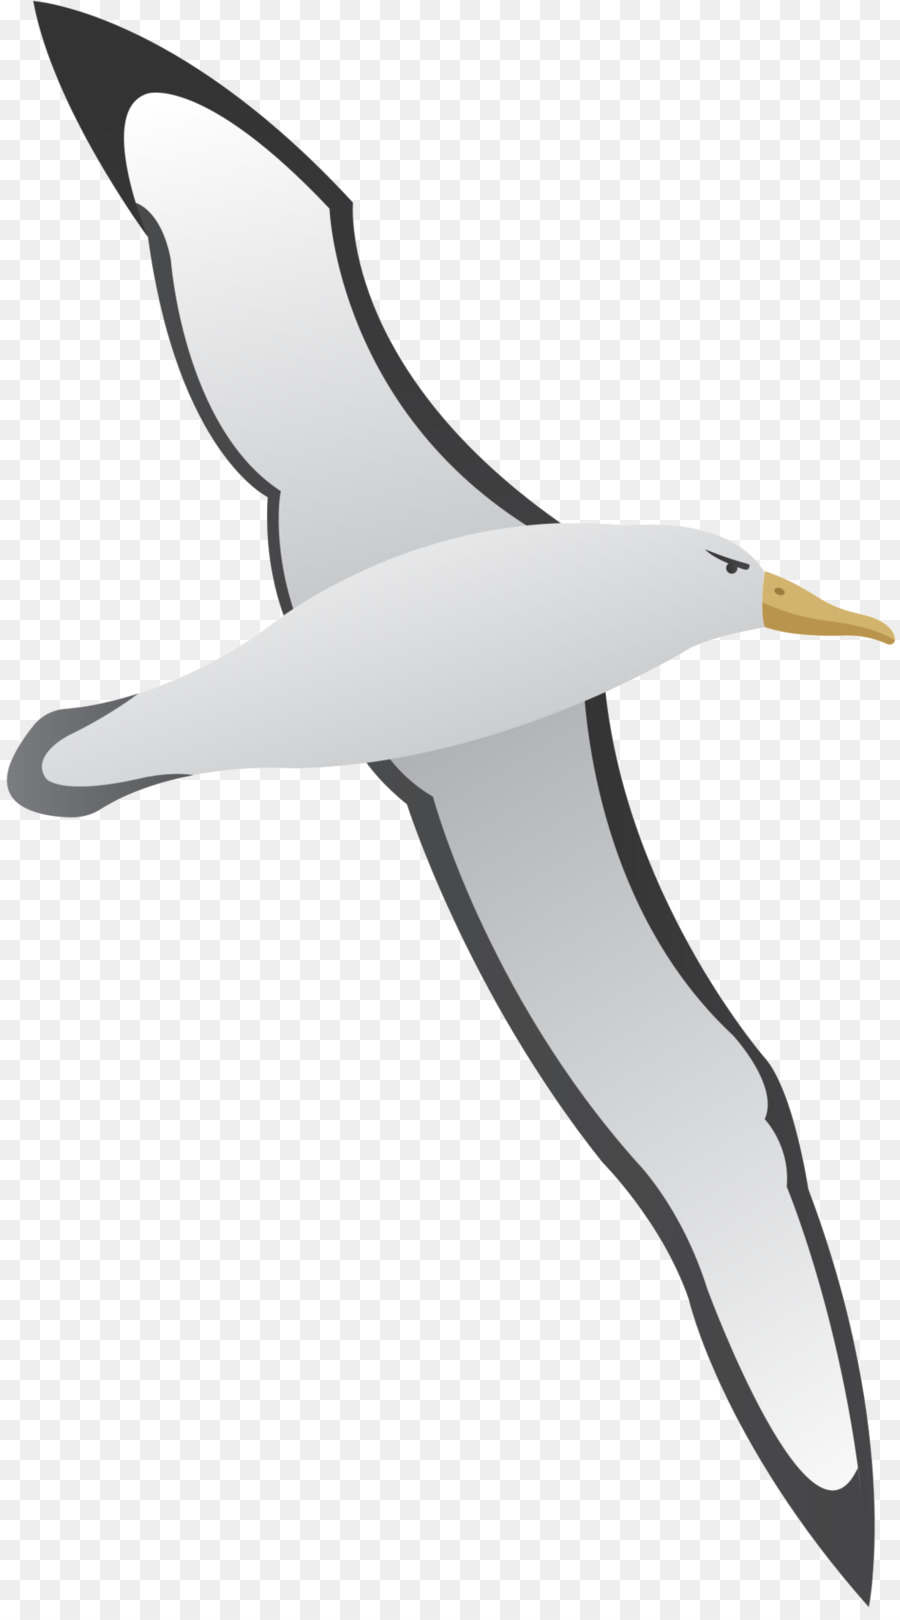 Gulls clip art.